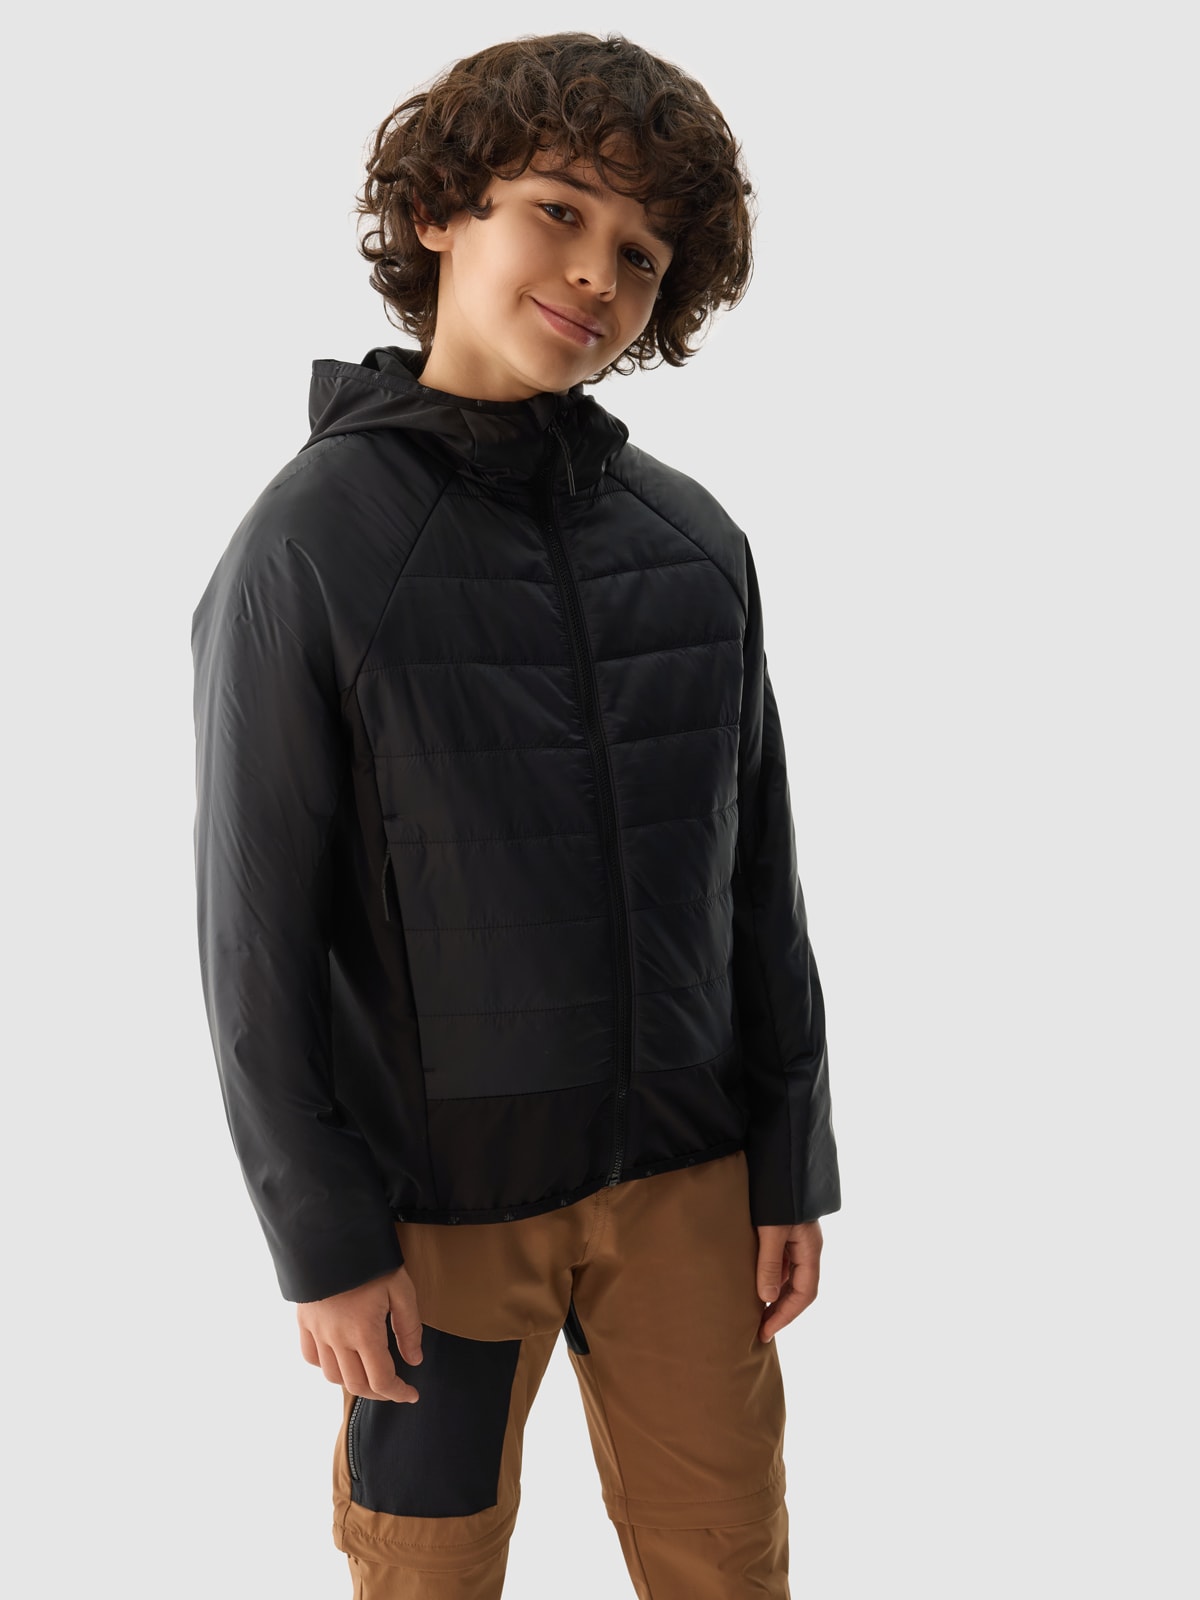 Chlapčenská zatepľovacia trekingová bunda so syntetickou výplňou - čierna